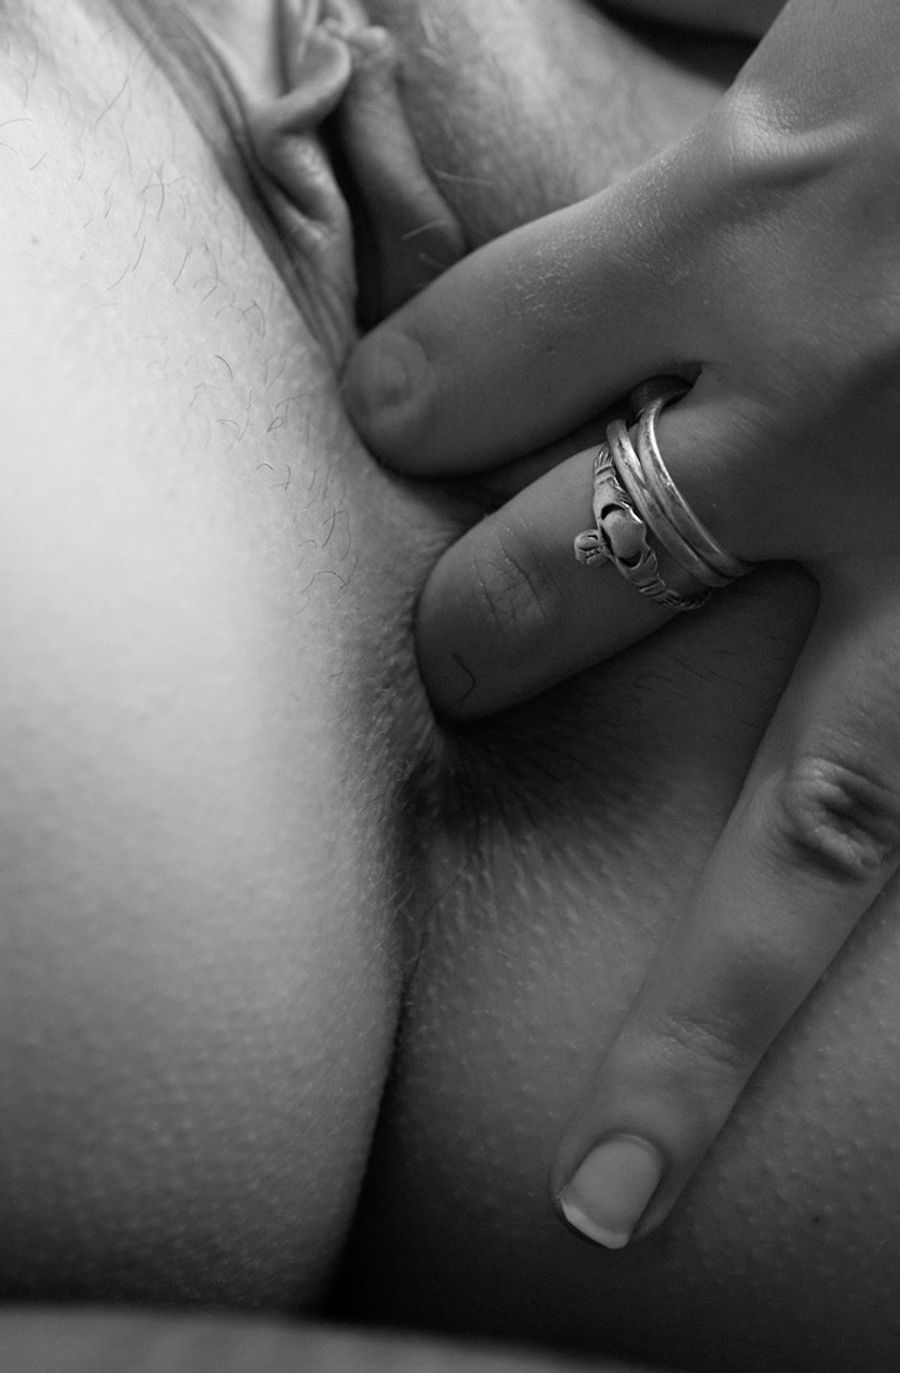 Black And White Xxx - black and white Photo Gallery: Porn Pics, Sex Photos & XXX GIFs